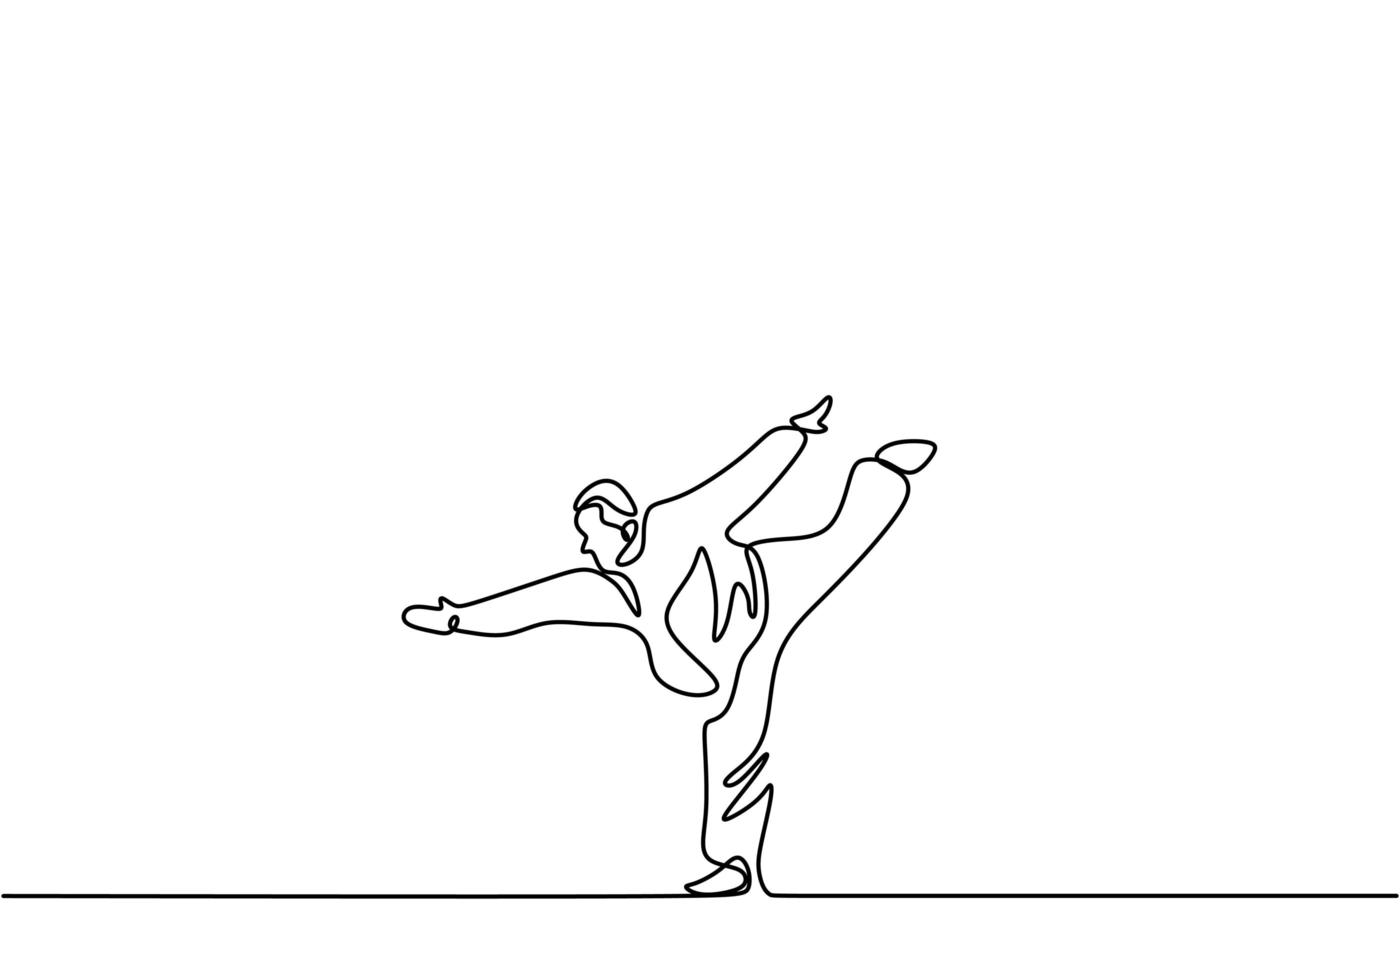 homem está fazendo taekwondo treinamento ilustração em vetor desenho linha única contínua. profissional sênior masculino em pé com uma perna enquanto os braços esticados para treinar o equilíbrio corporal em estilo minimalista